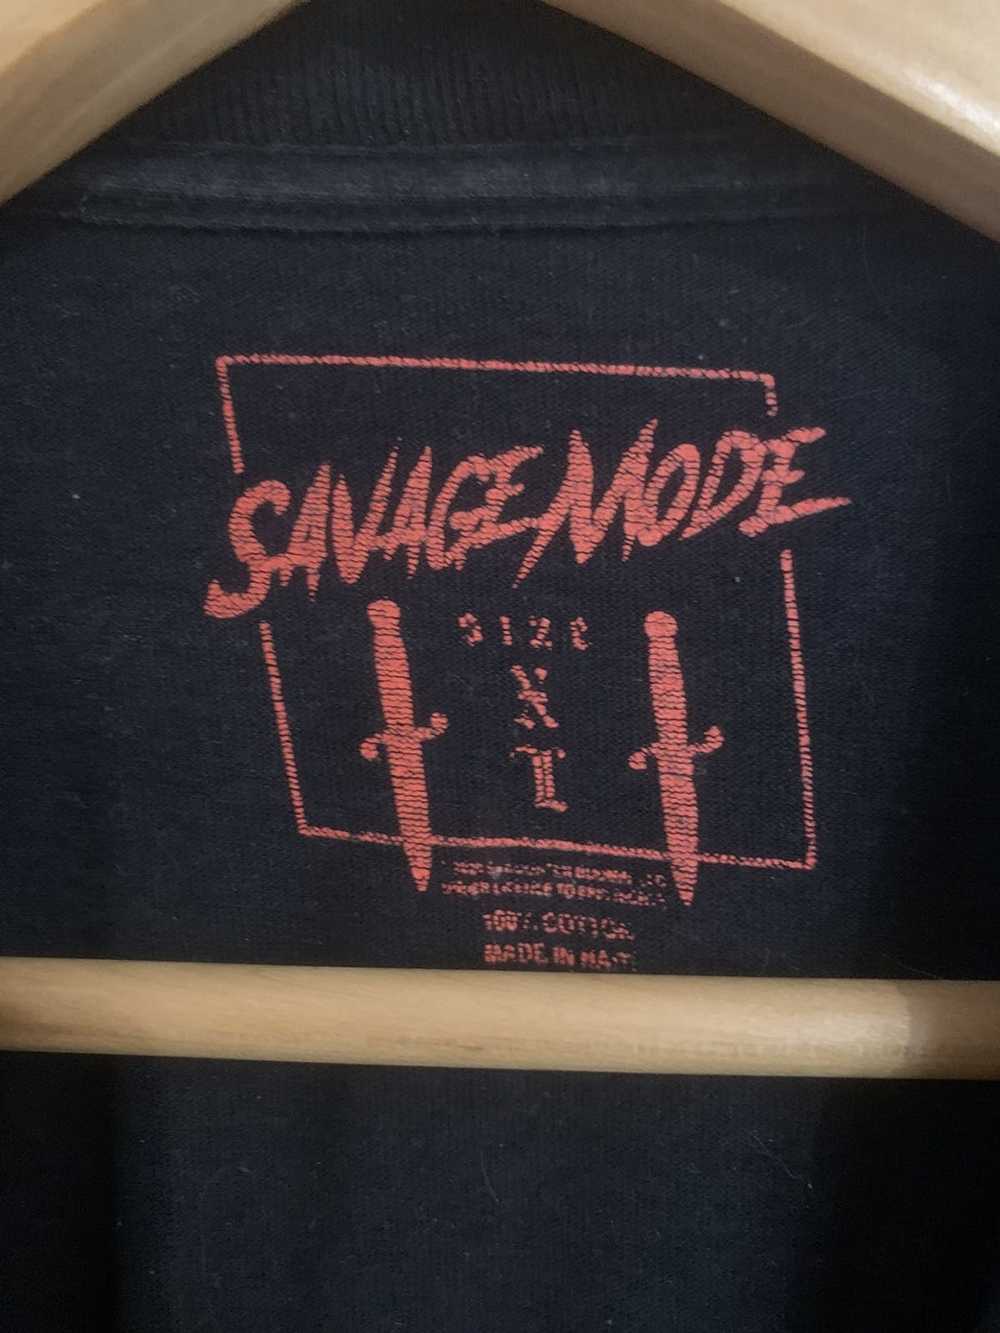 21 Savage × Metro Boomin Savage mode 2 Xl black - image 2